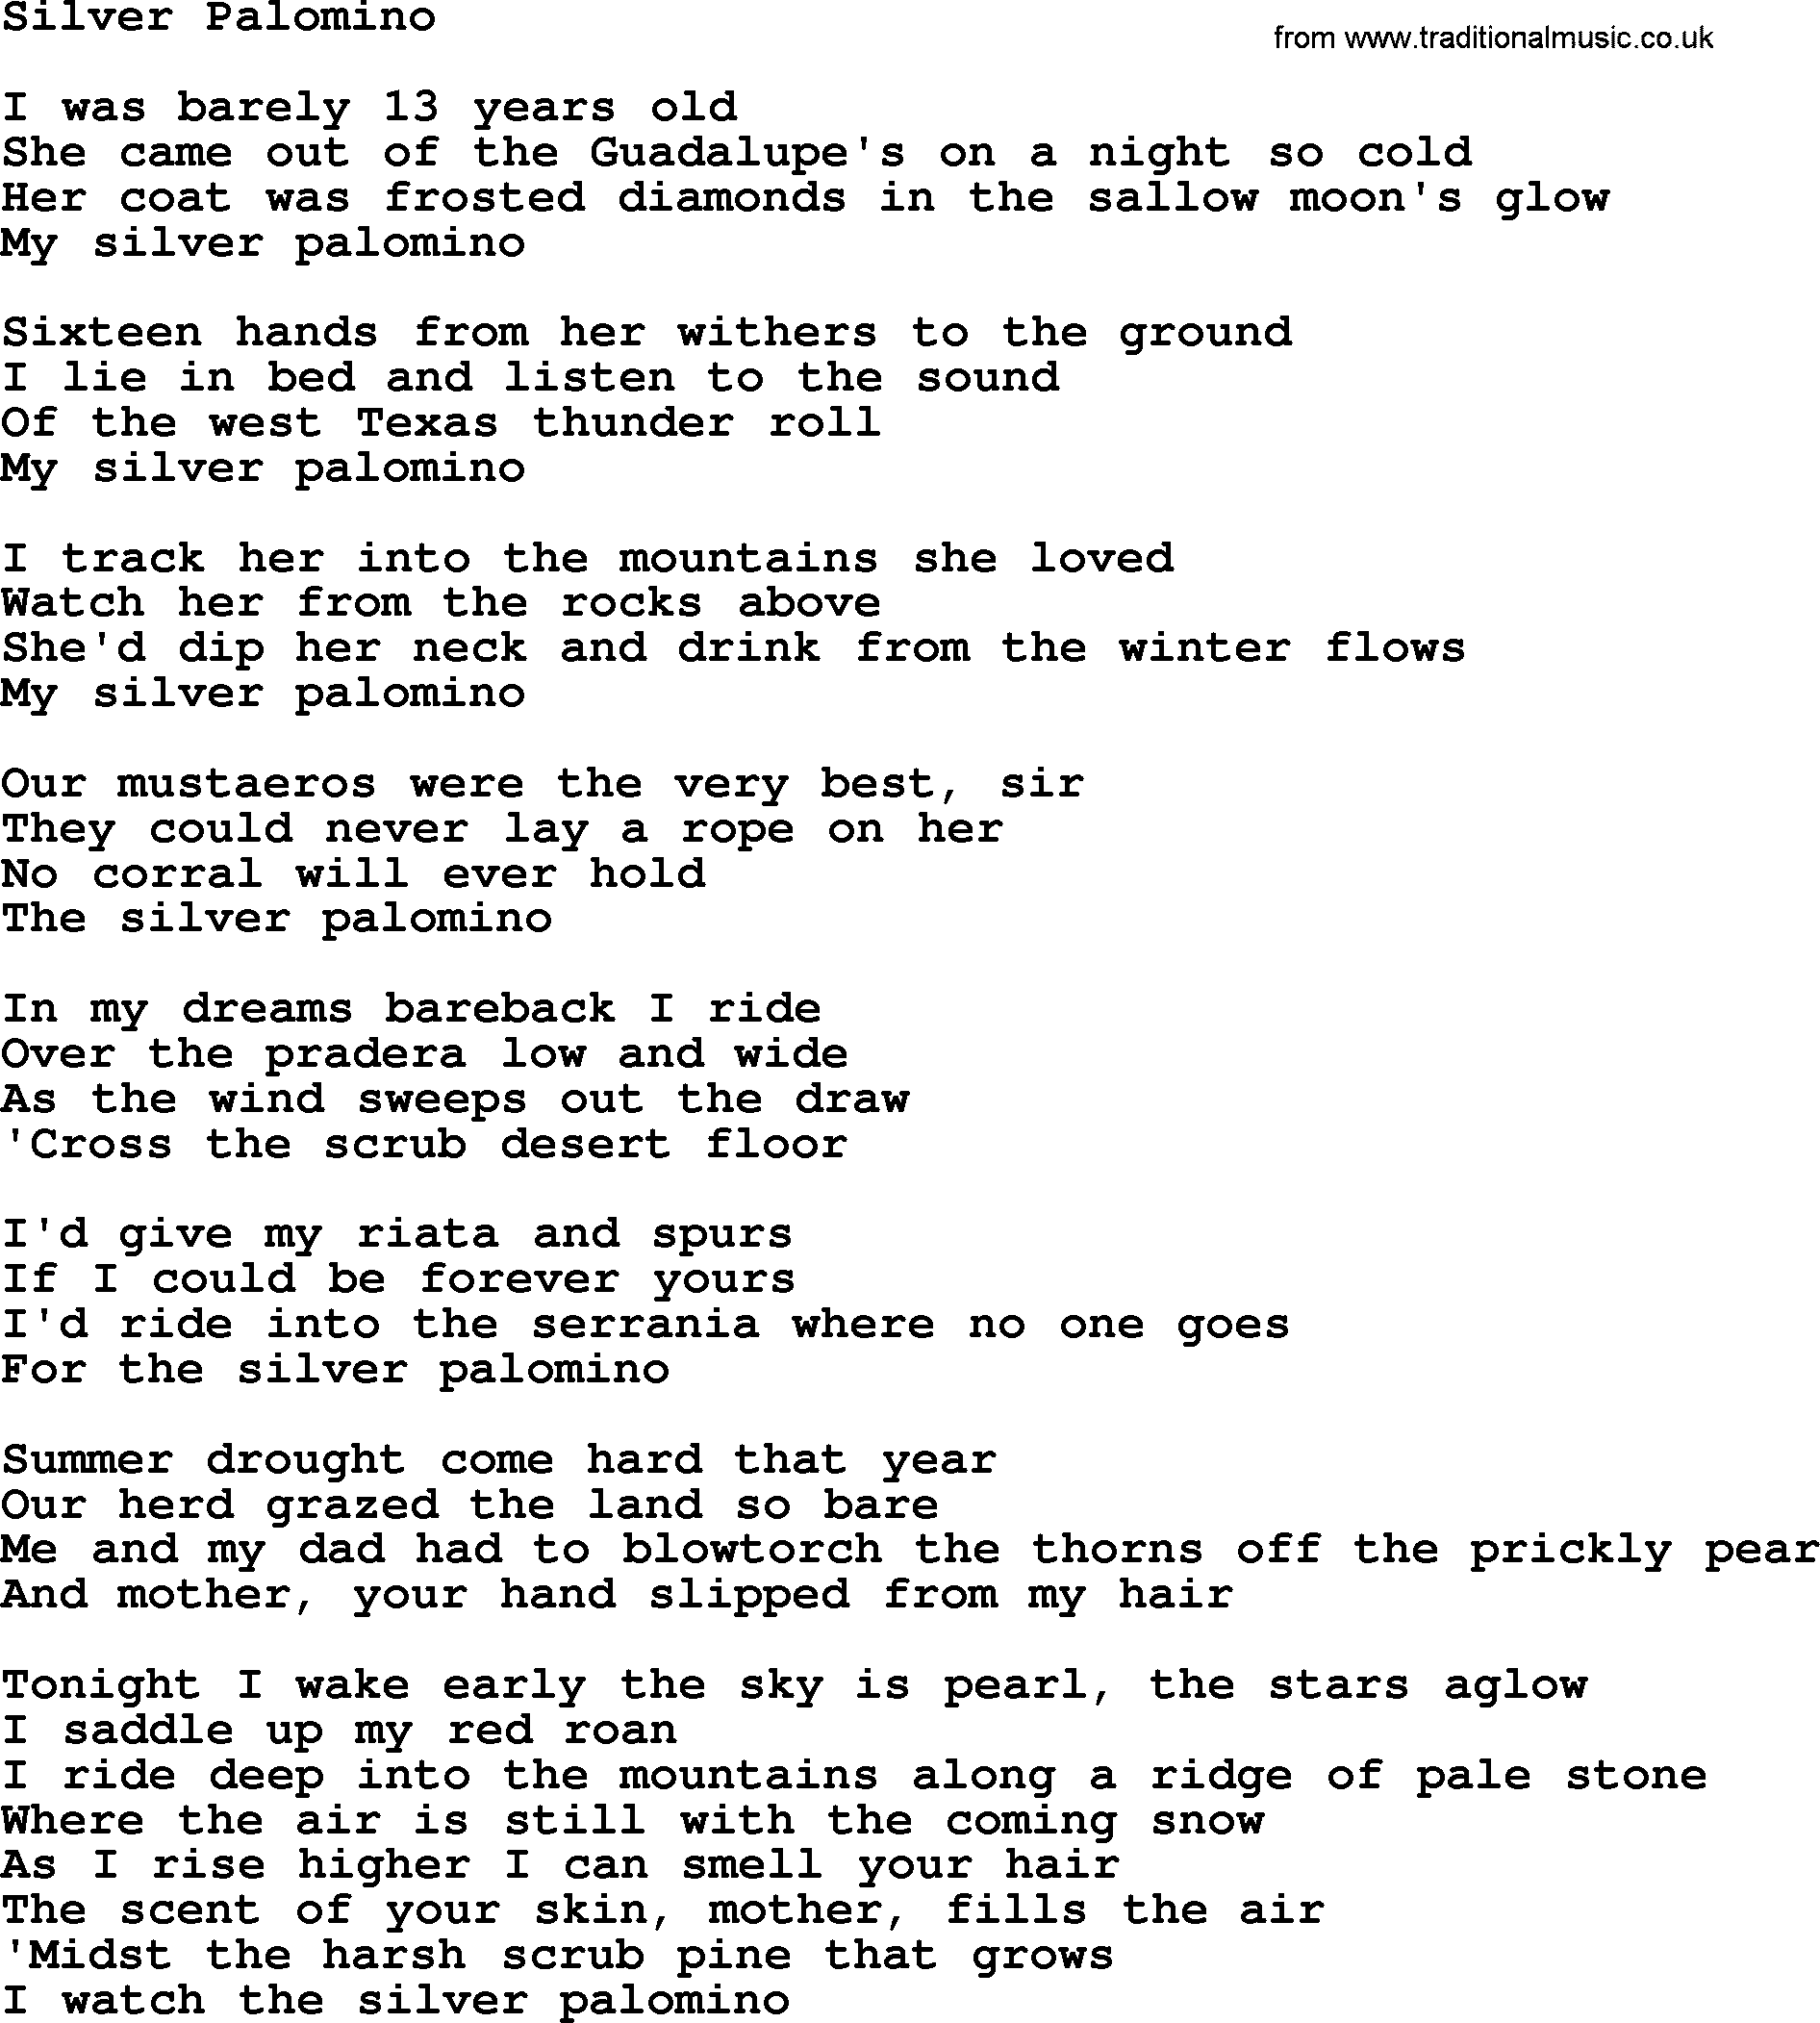 Bruce Springsteen song: Silver Palomino lyrics